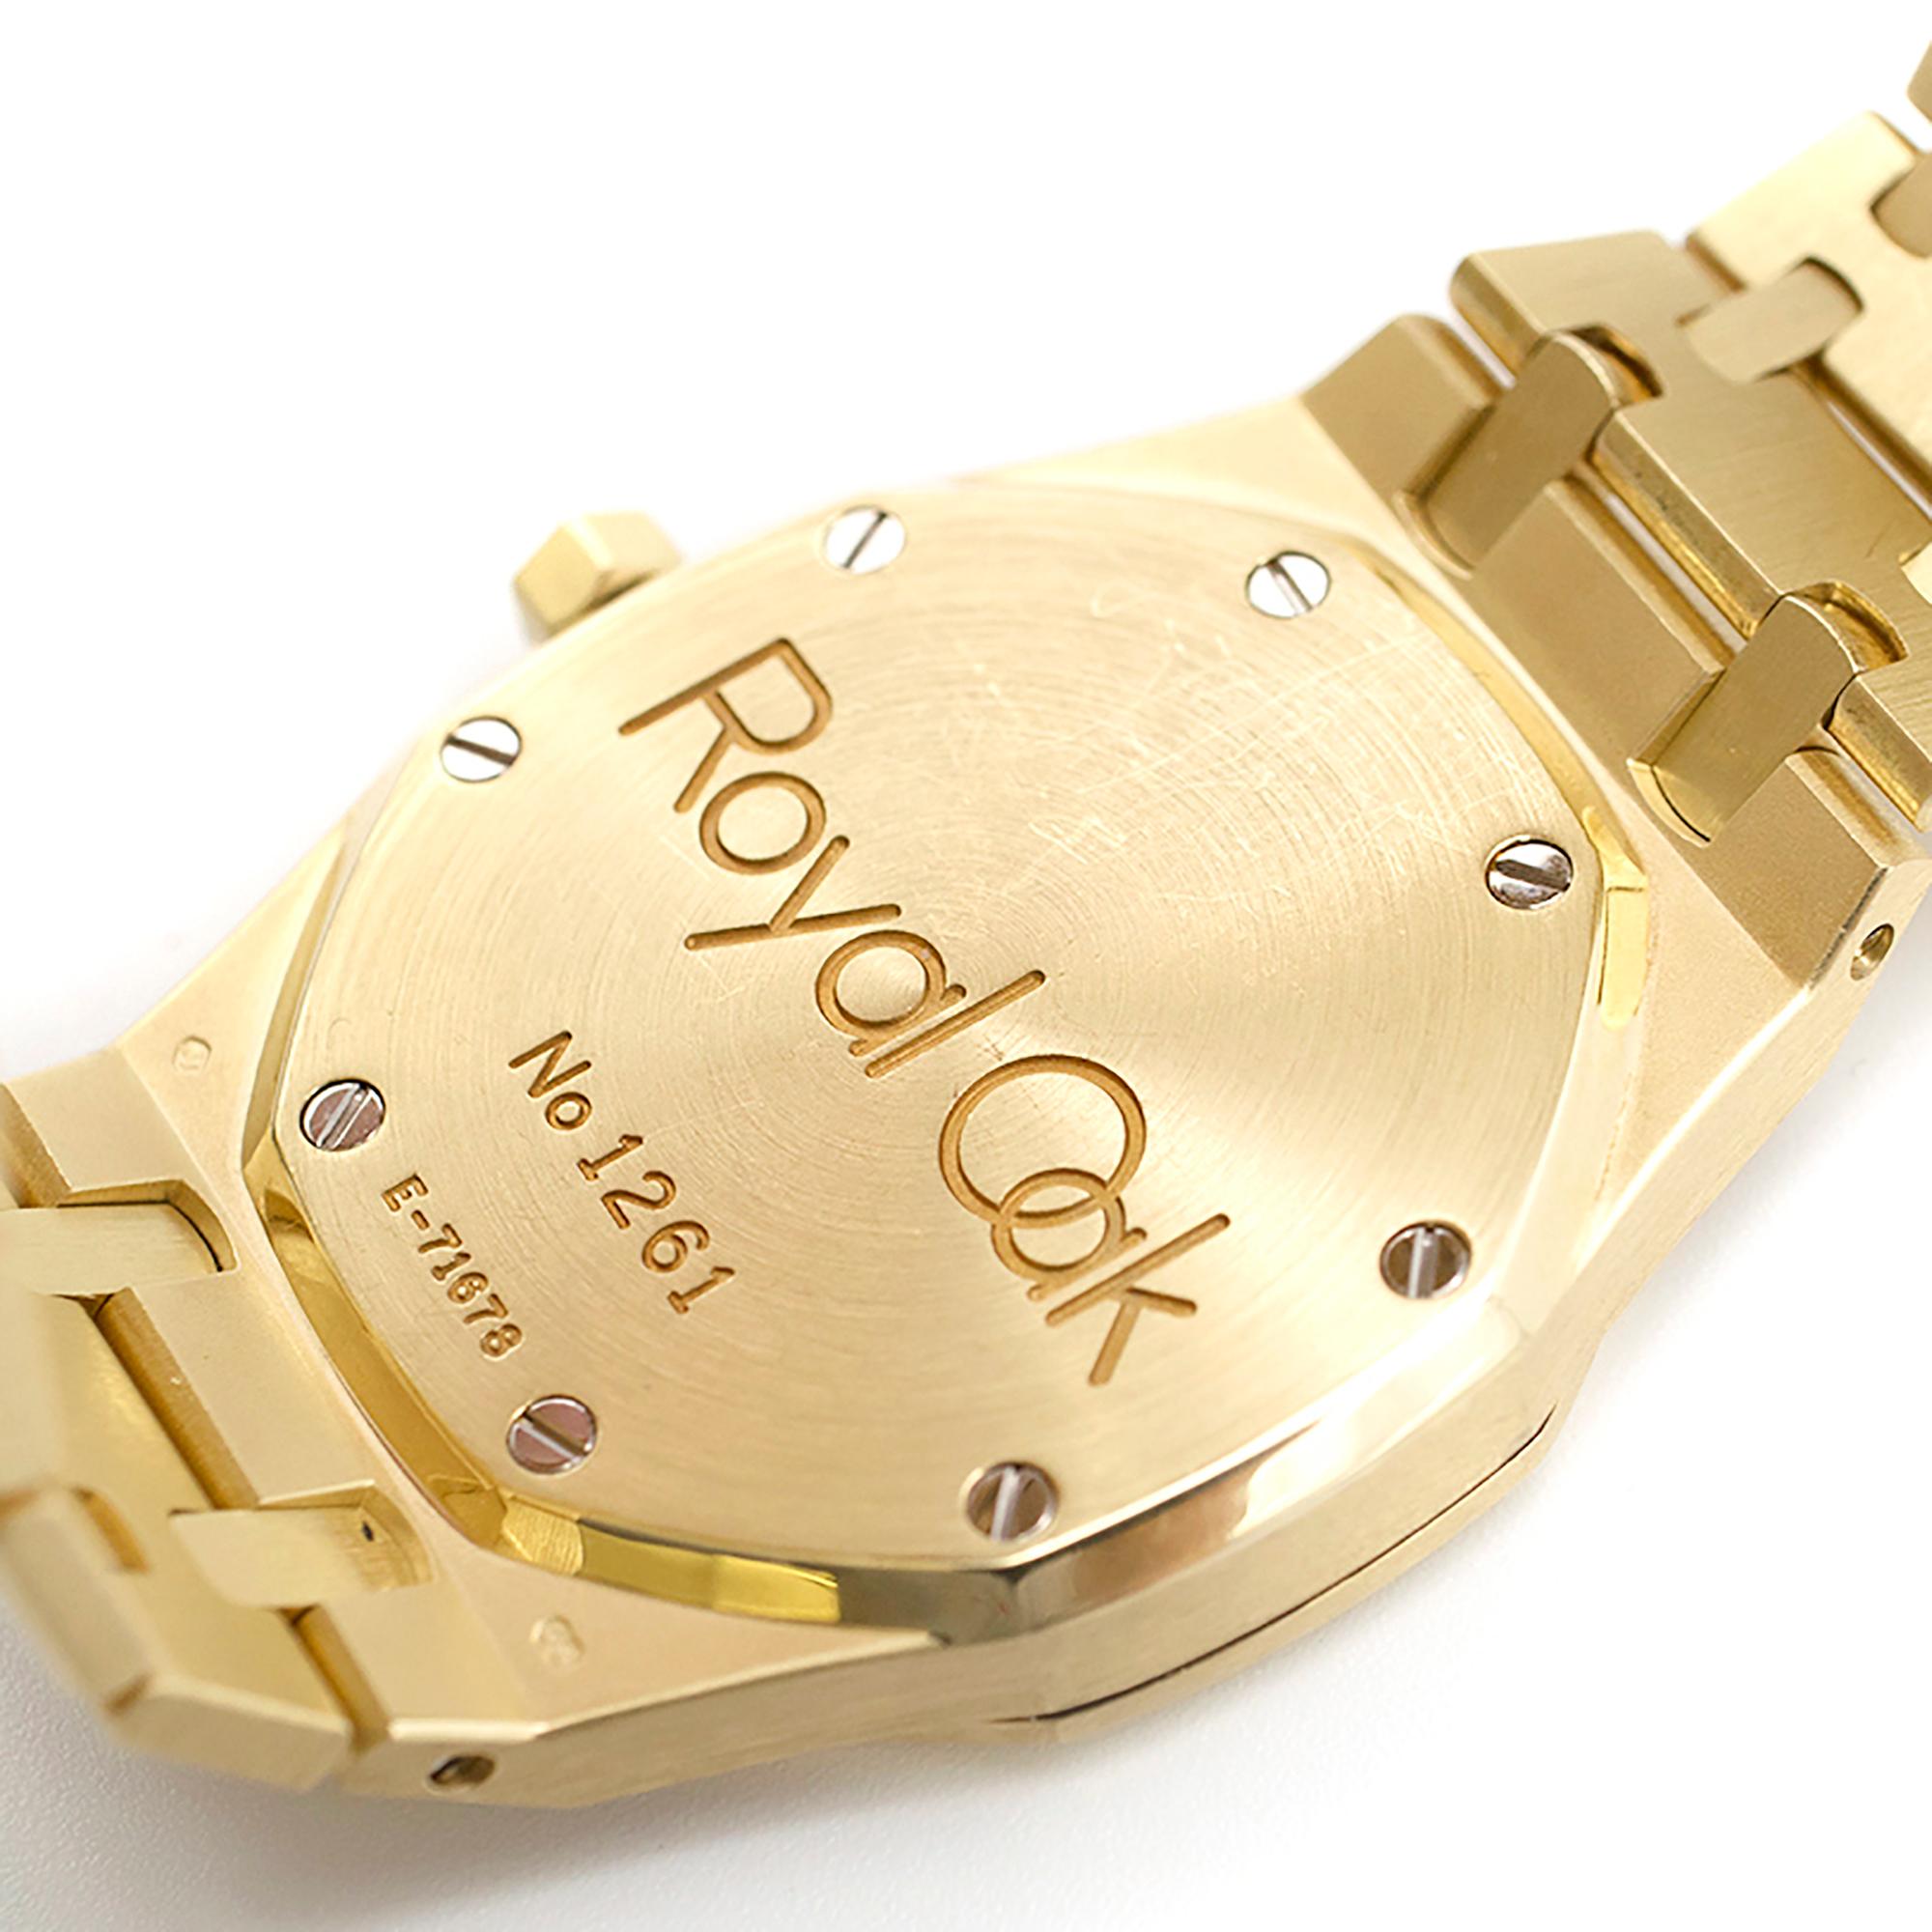 Audemars Piguet Octagonal Royal Oak 18 Karat Yellow Gold Watch 1